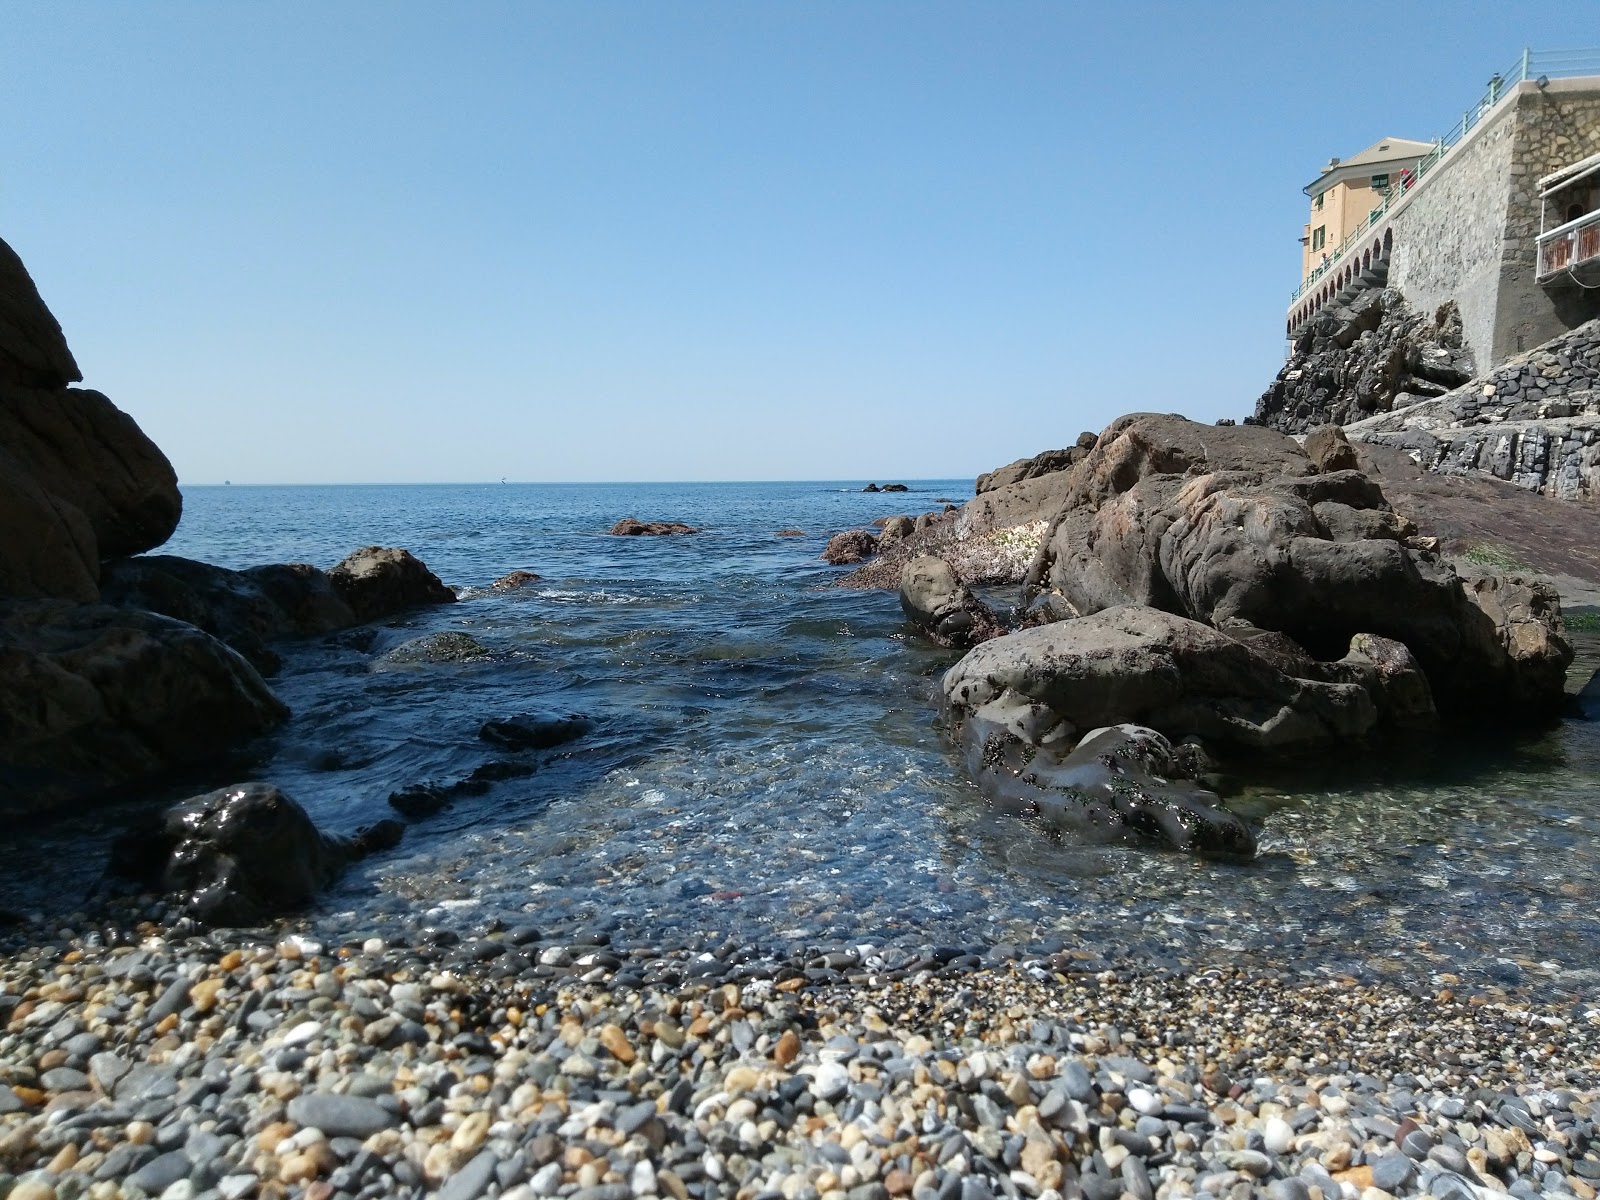 Spiaggia di Caprafico'in fotoğrafı küçük koy ile birlikte